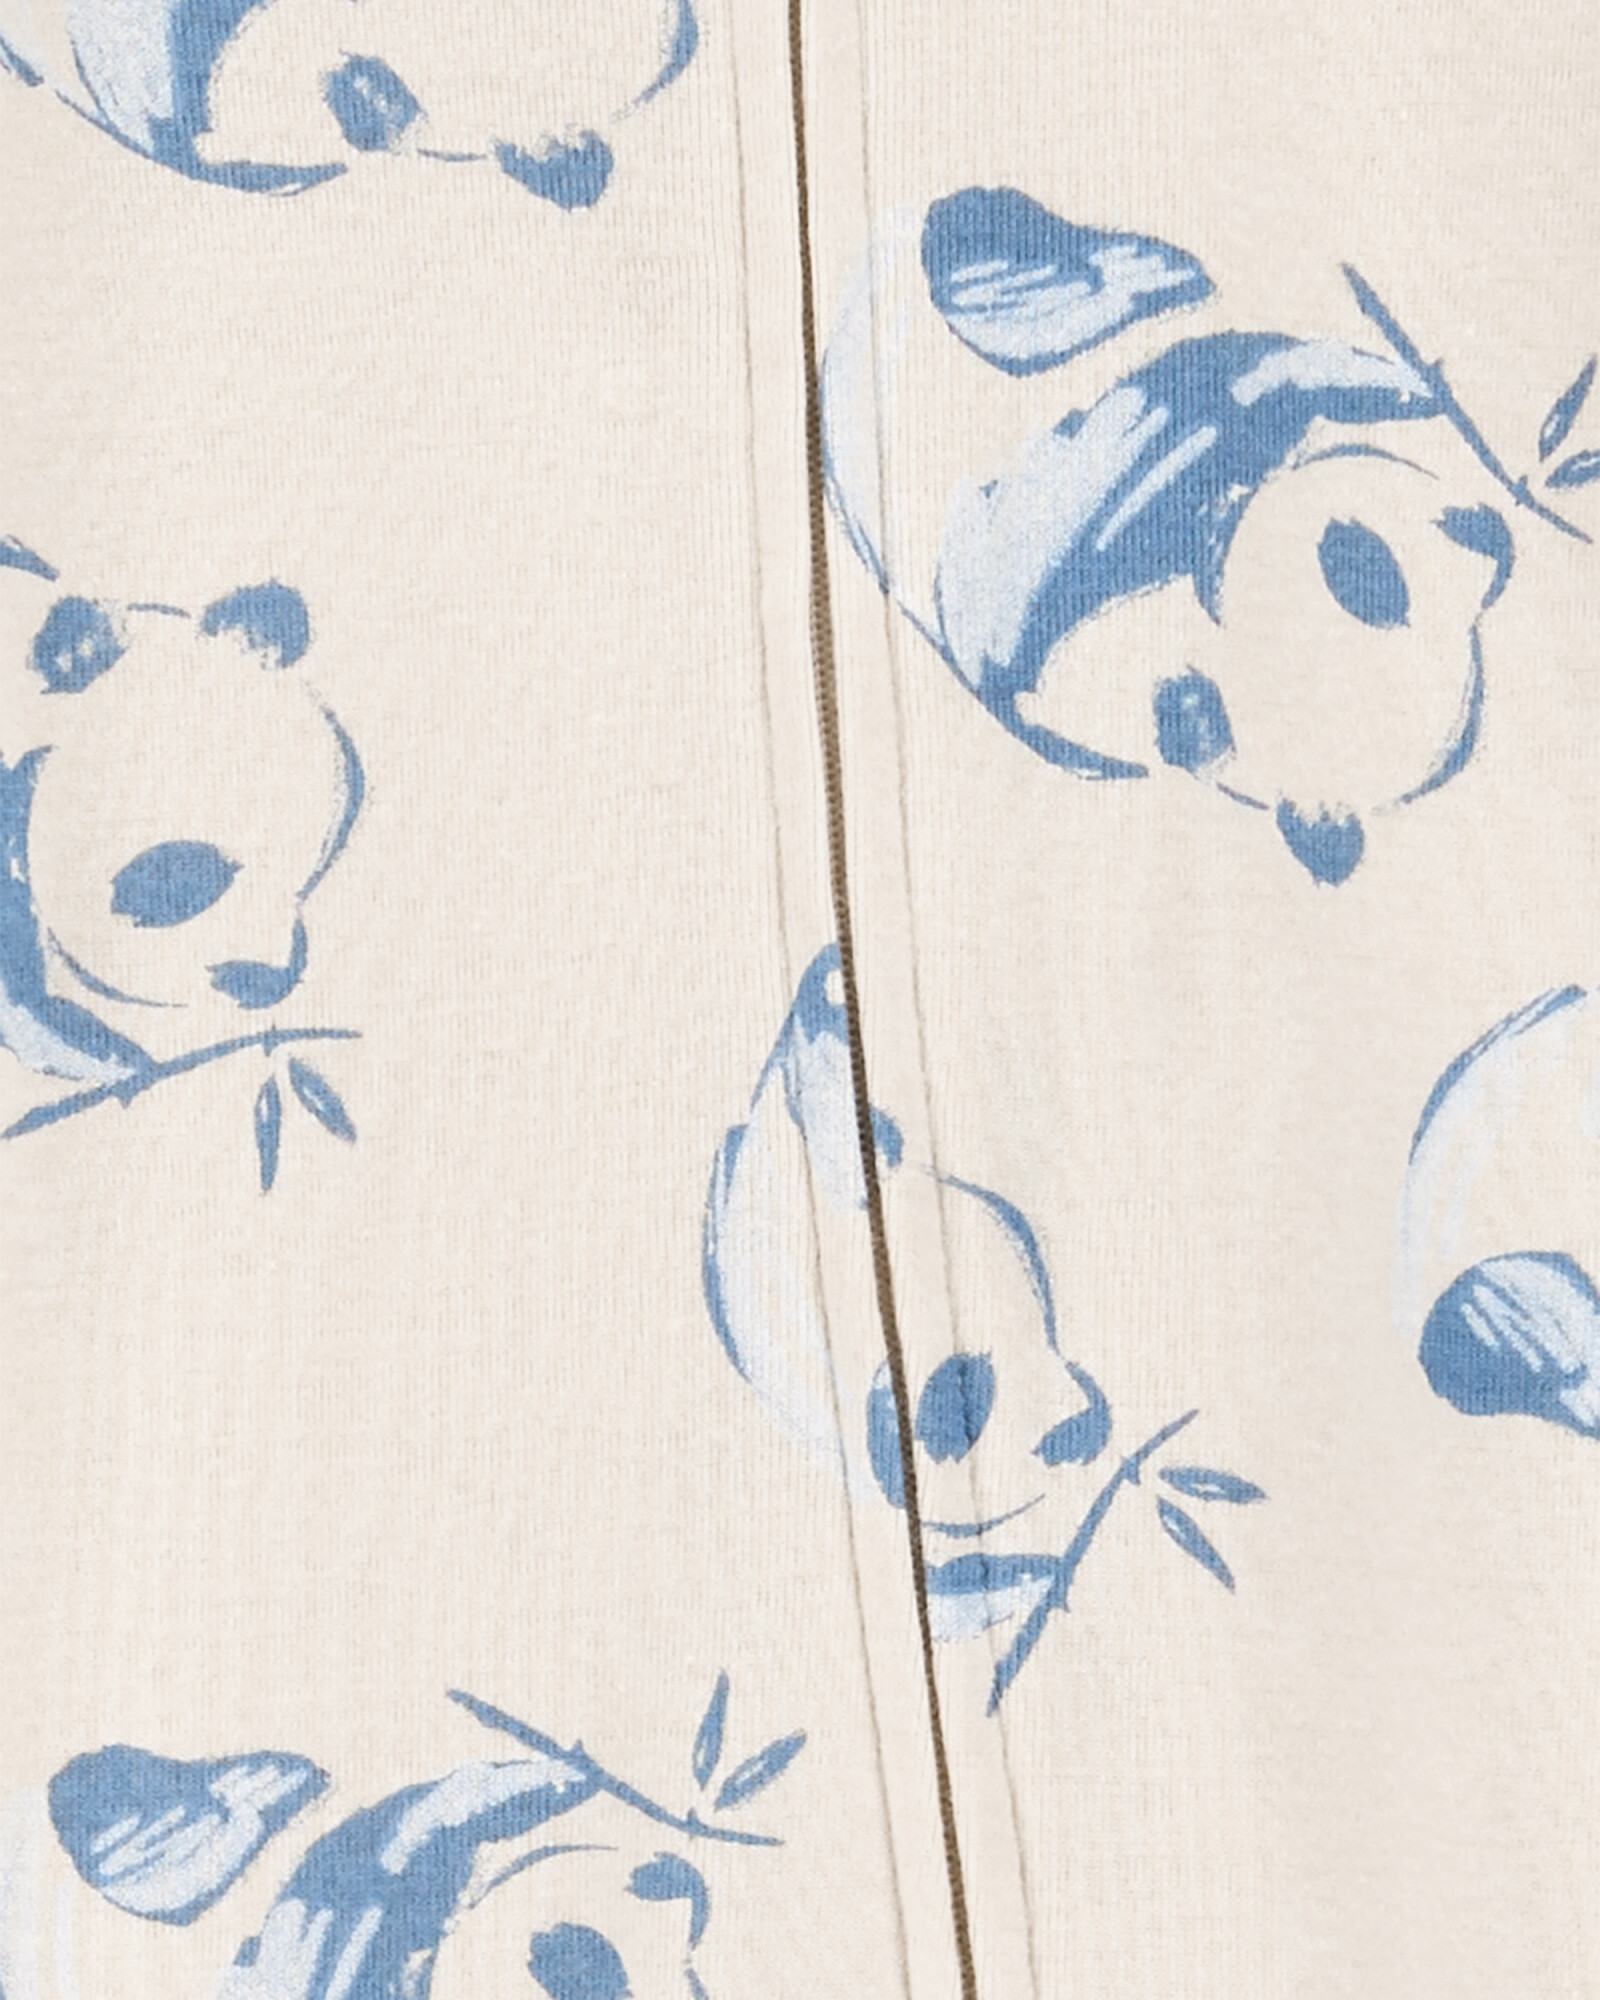 Pijama una pieza de algodón, con pie y gorro, diseño panda Sin color